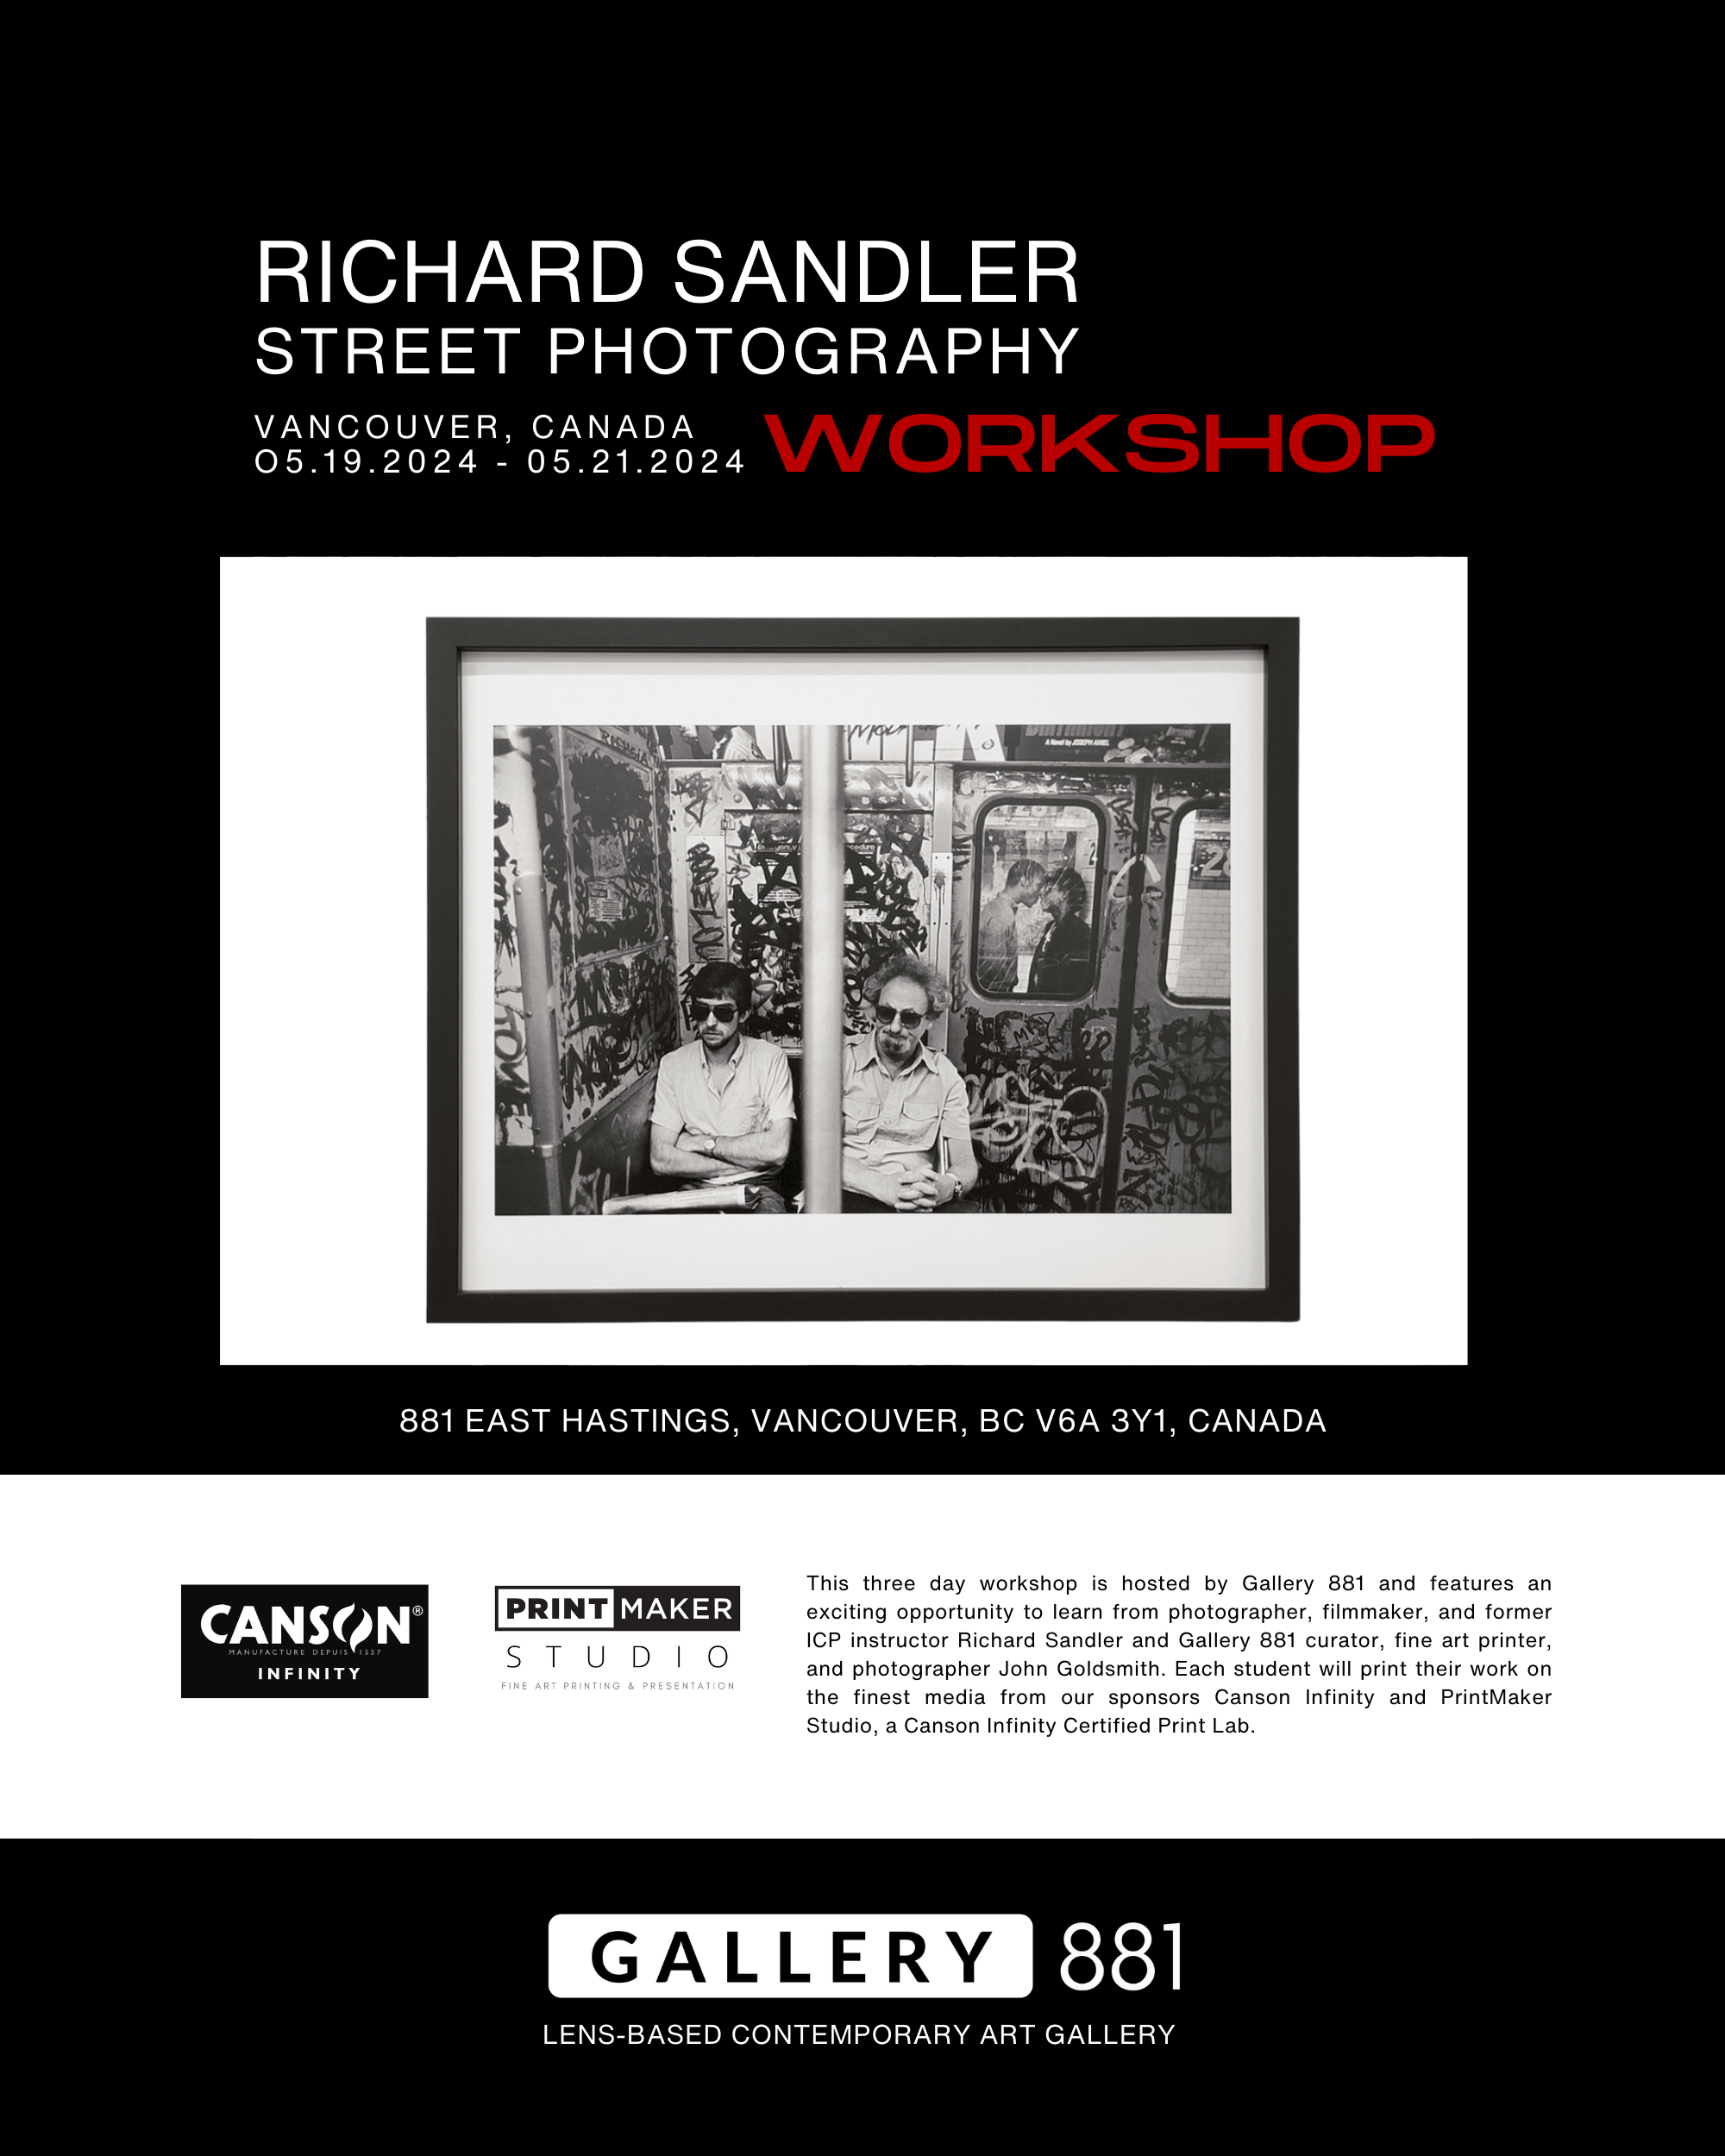 Gallery-881-Richard-Sandler-Workshop-6.png